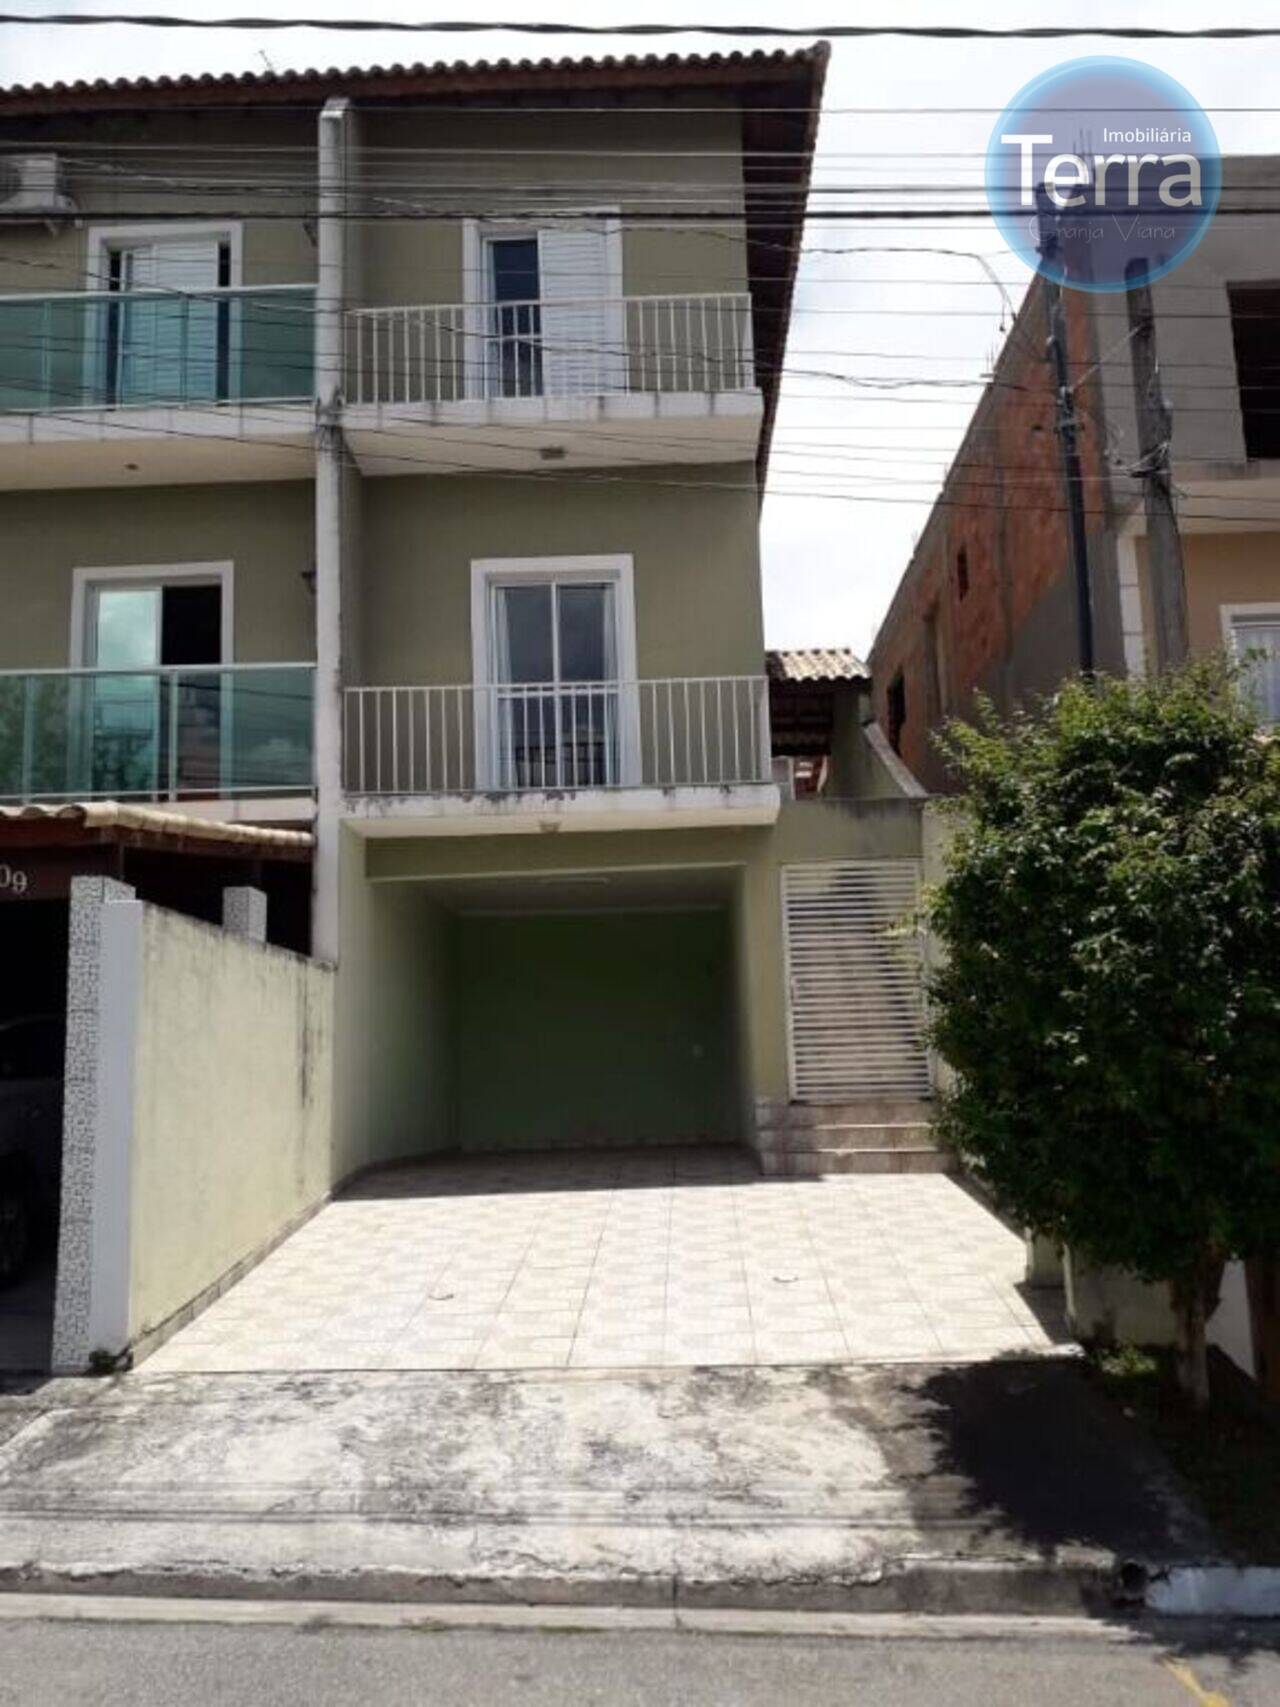 Casa Granja Viana - Villa D'este, Cotia - SP